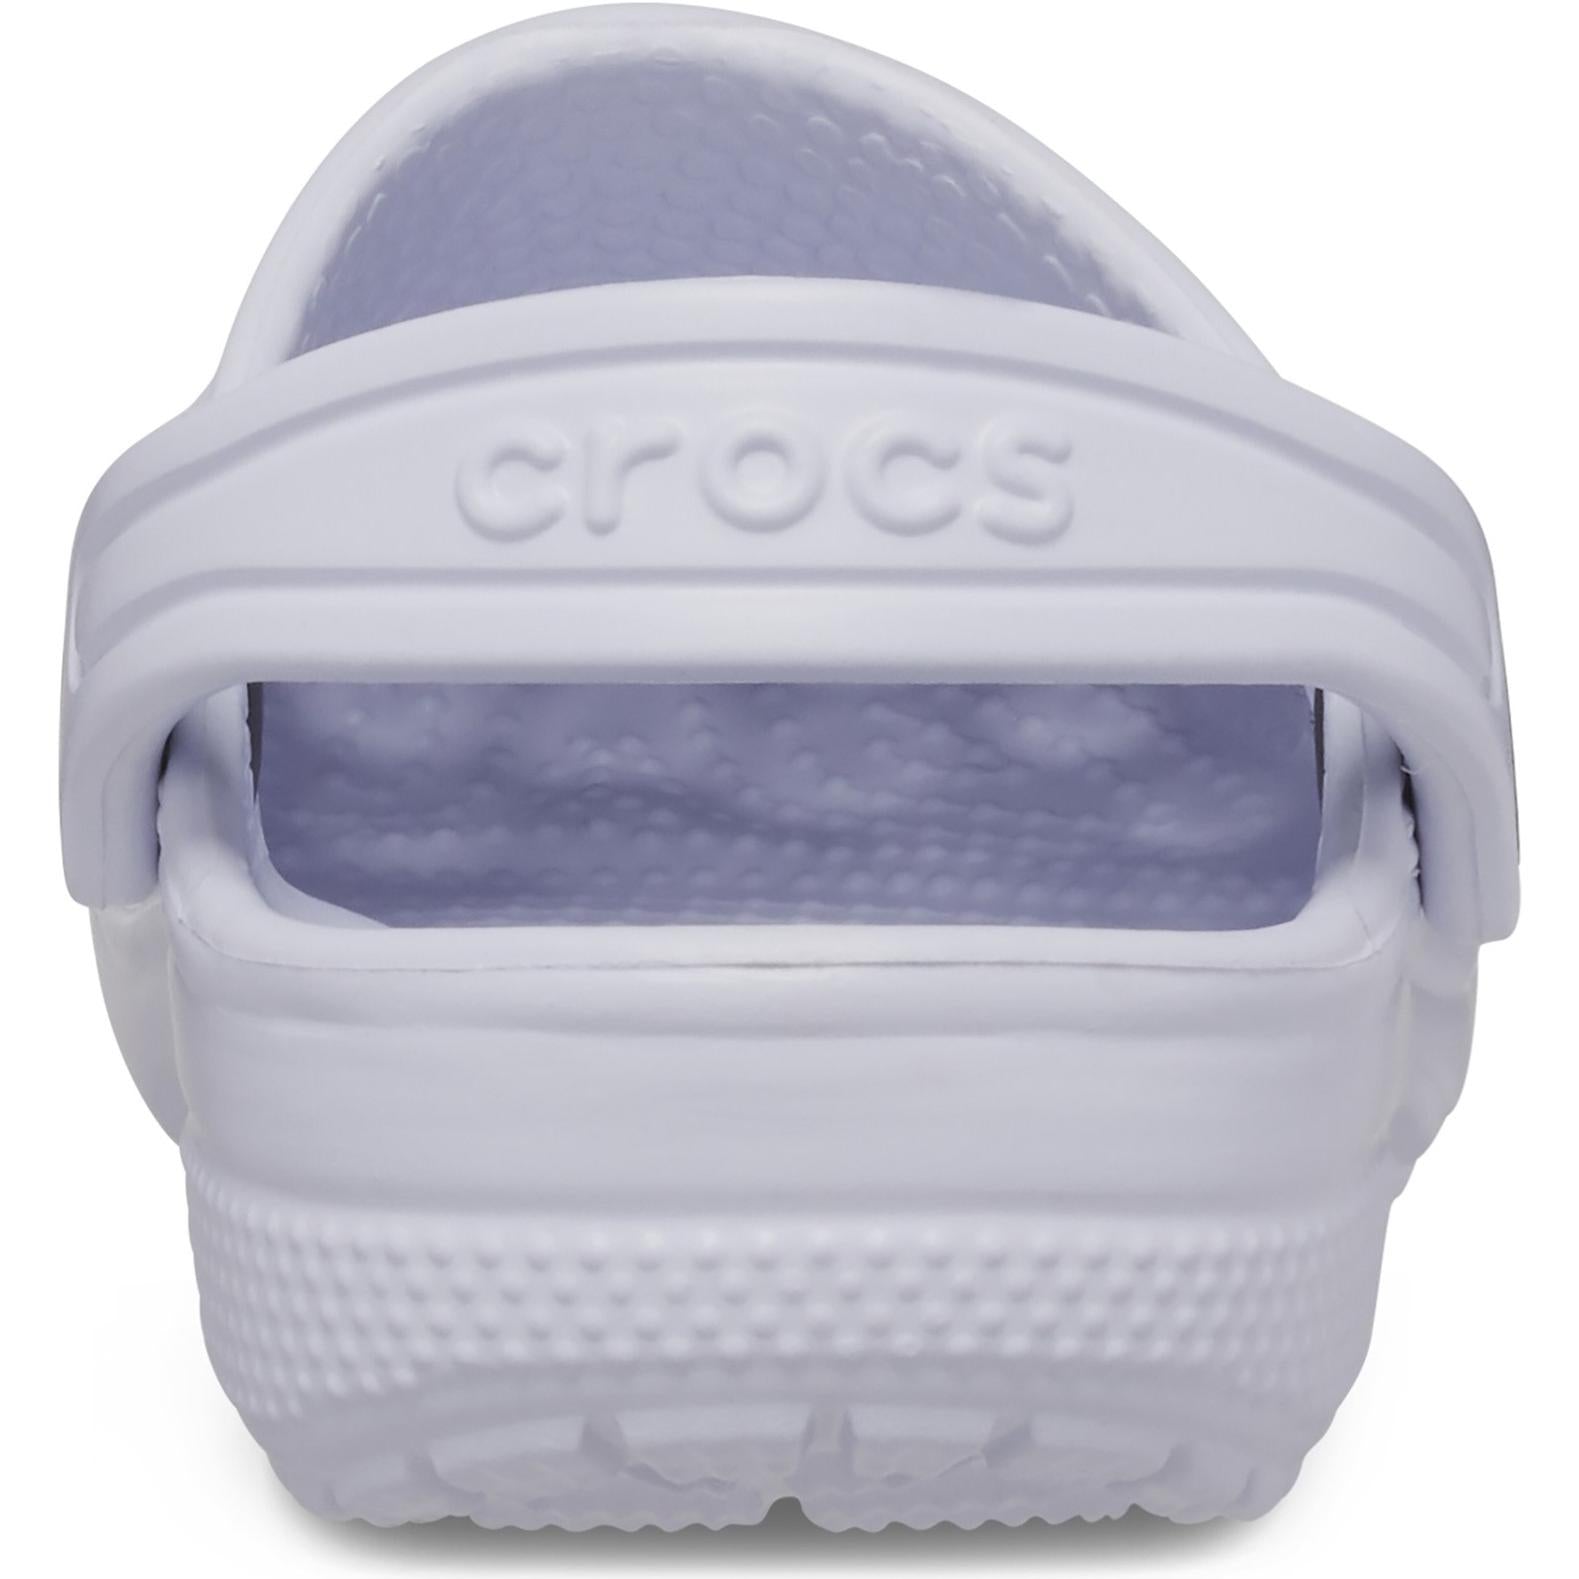 Crocs Kids' Classic Clog Shoes